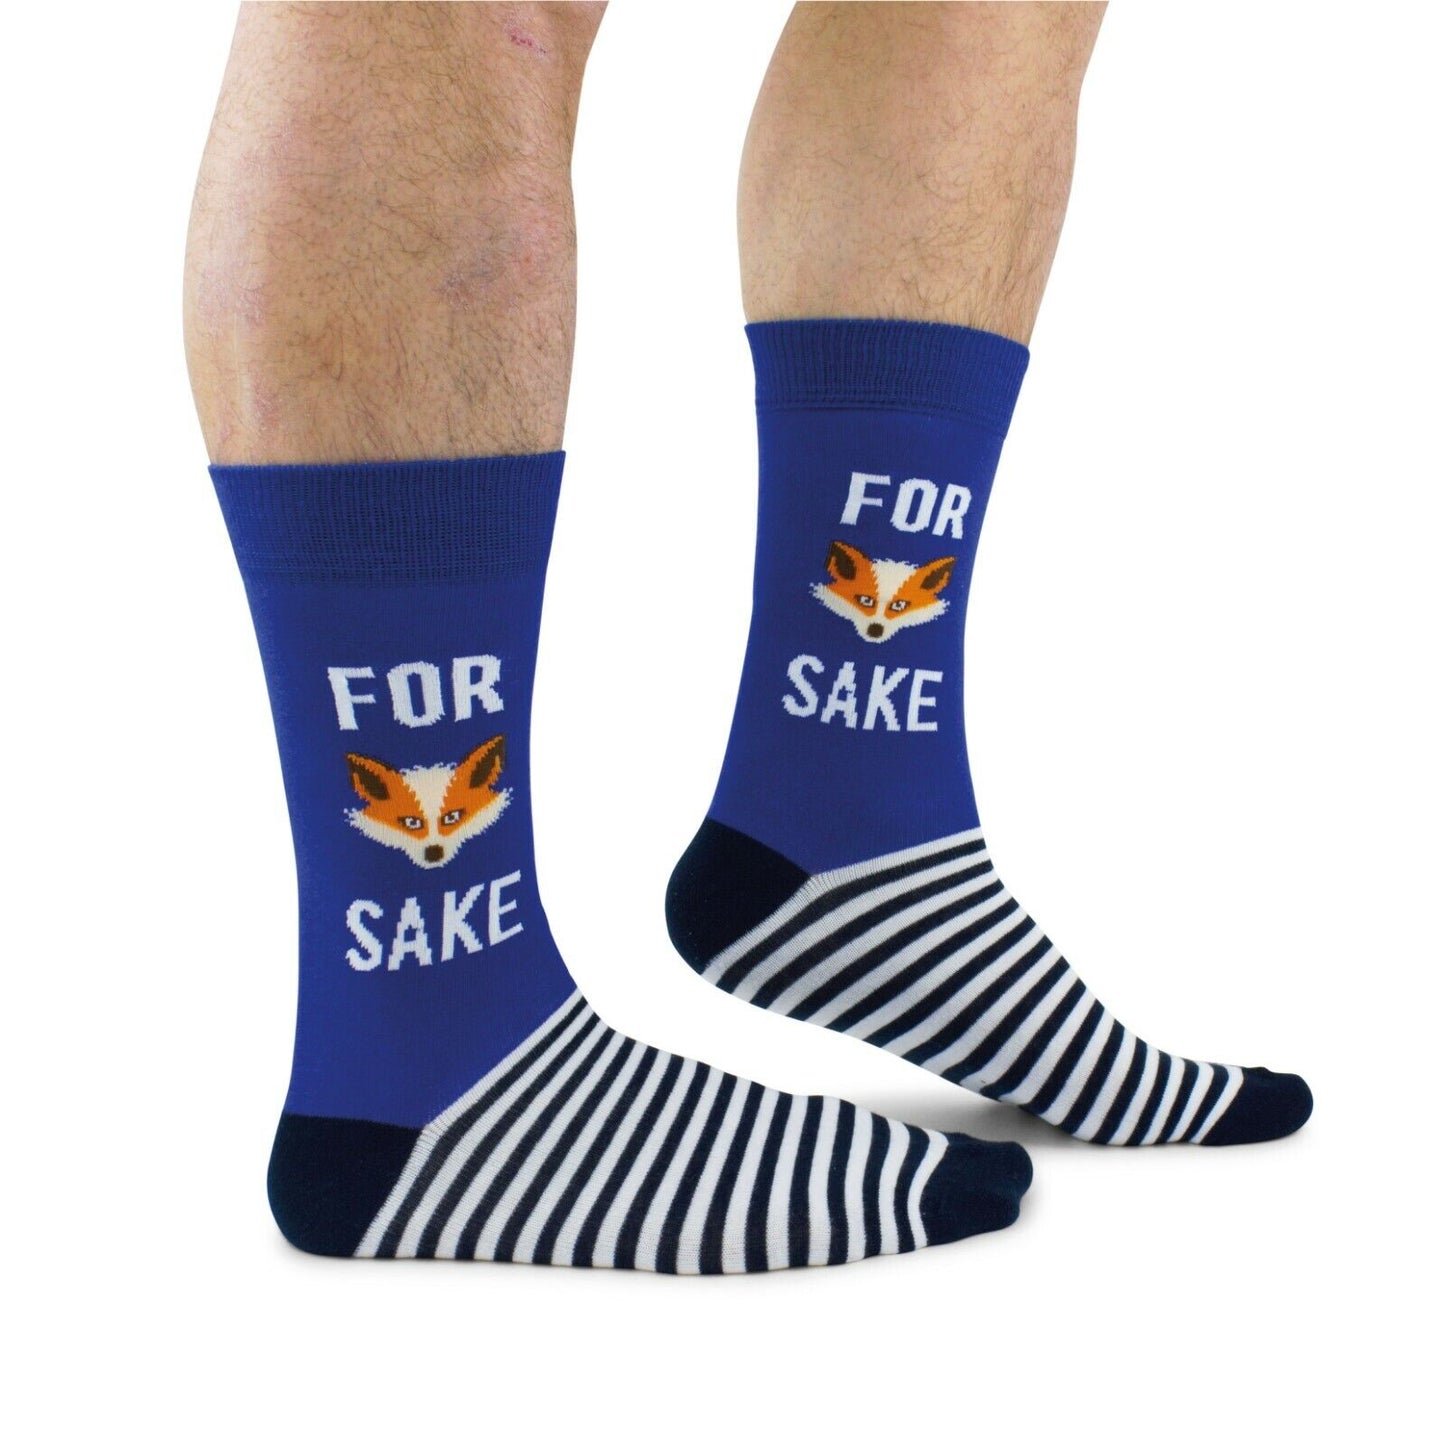 For Fox Sake Socks for Men